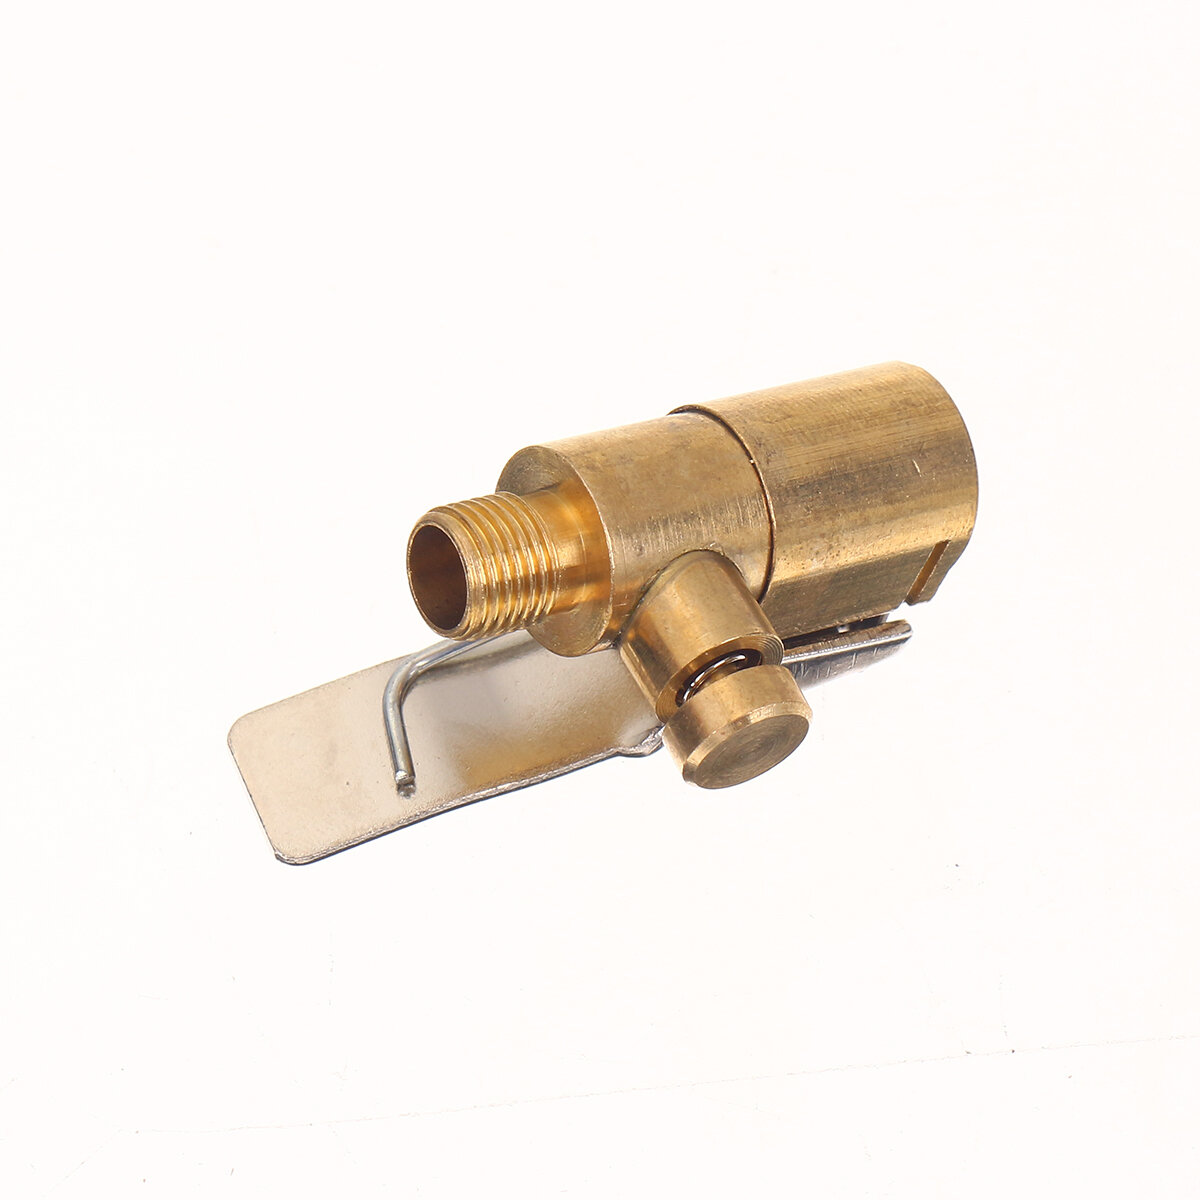 Adattatore di clip valvola pompa aria auto pneumatico ruota pneumatico in ottone 8 mm.